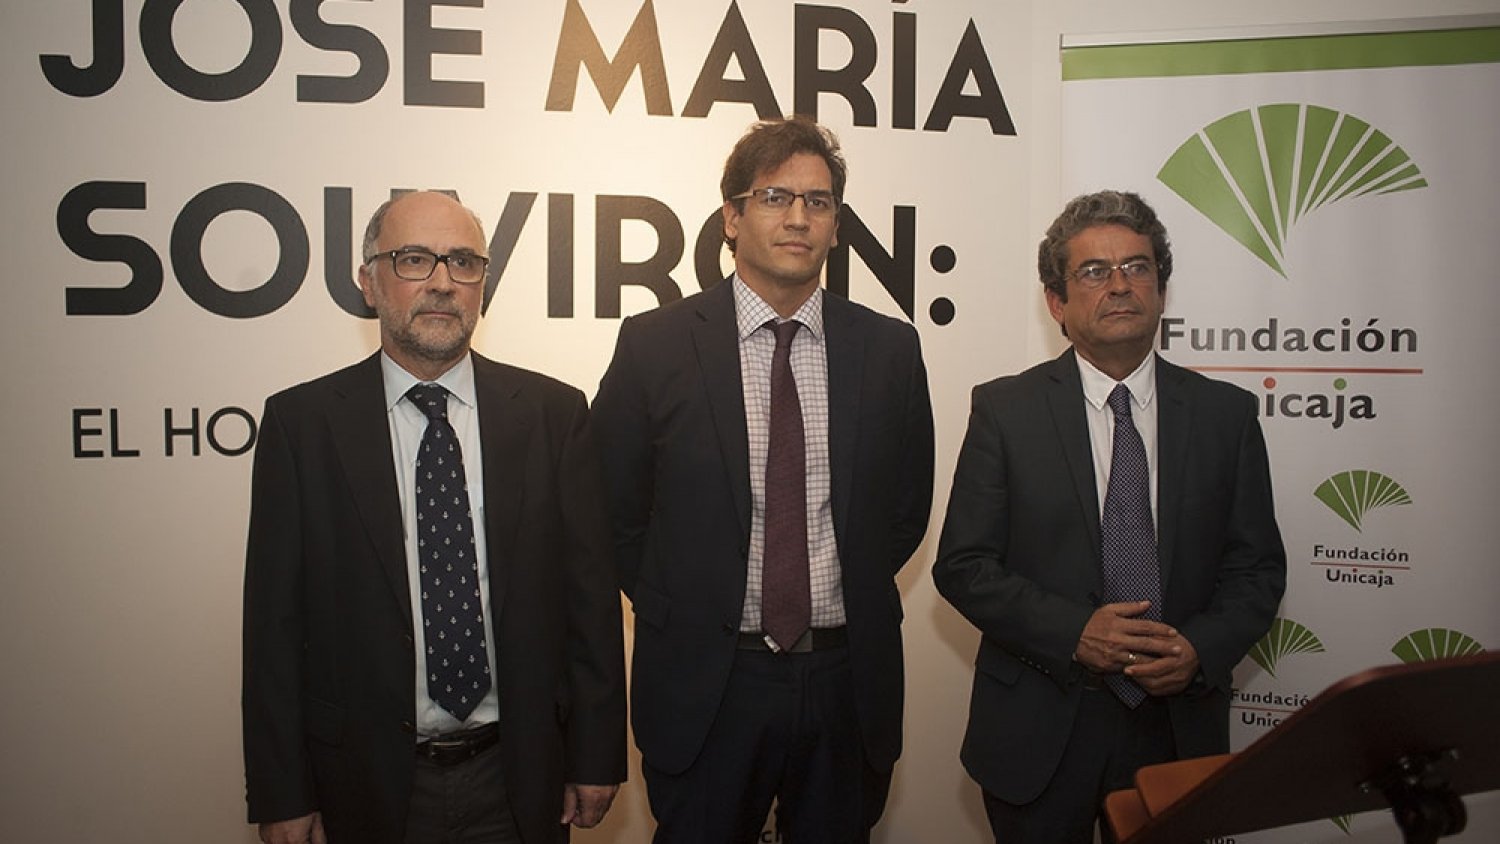 Fundación Unicaja y la Diputación rinden homenaje a José María Souvirón a través de una exposición y conferencias